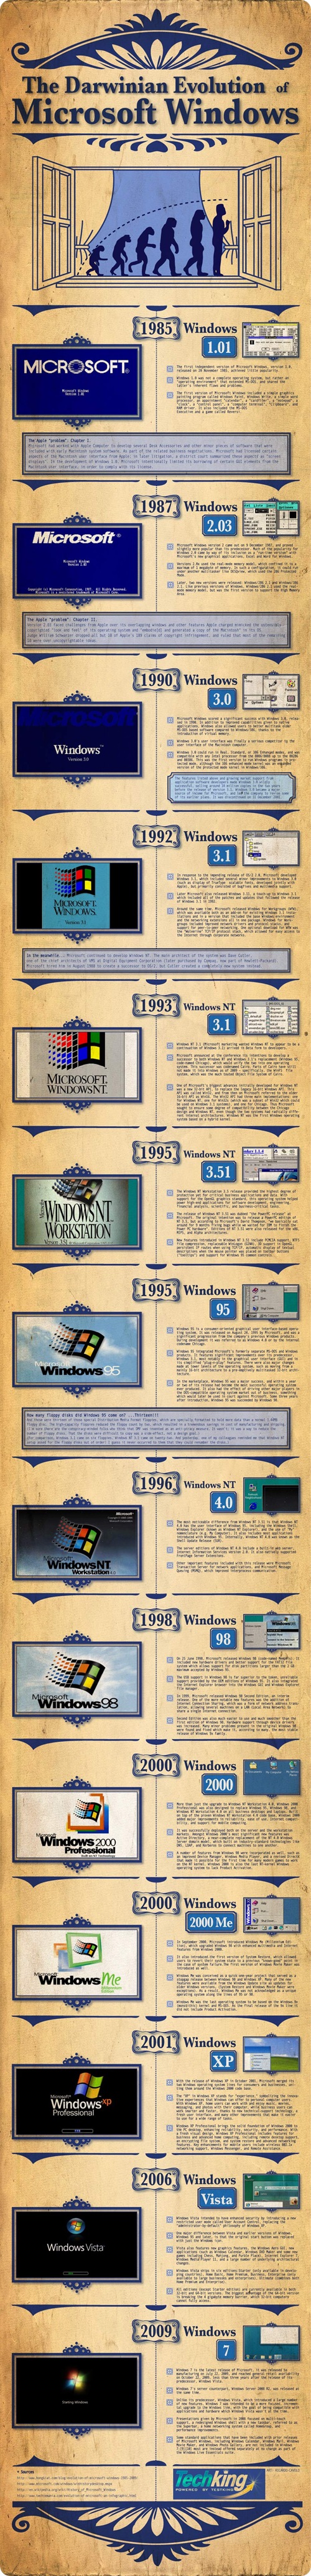 L’évolution de Windows